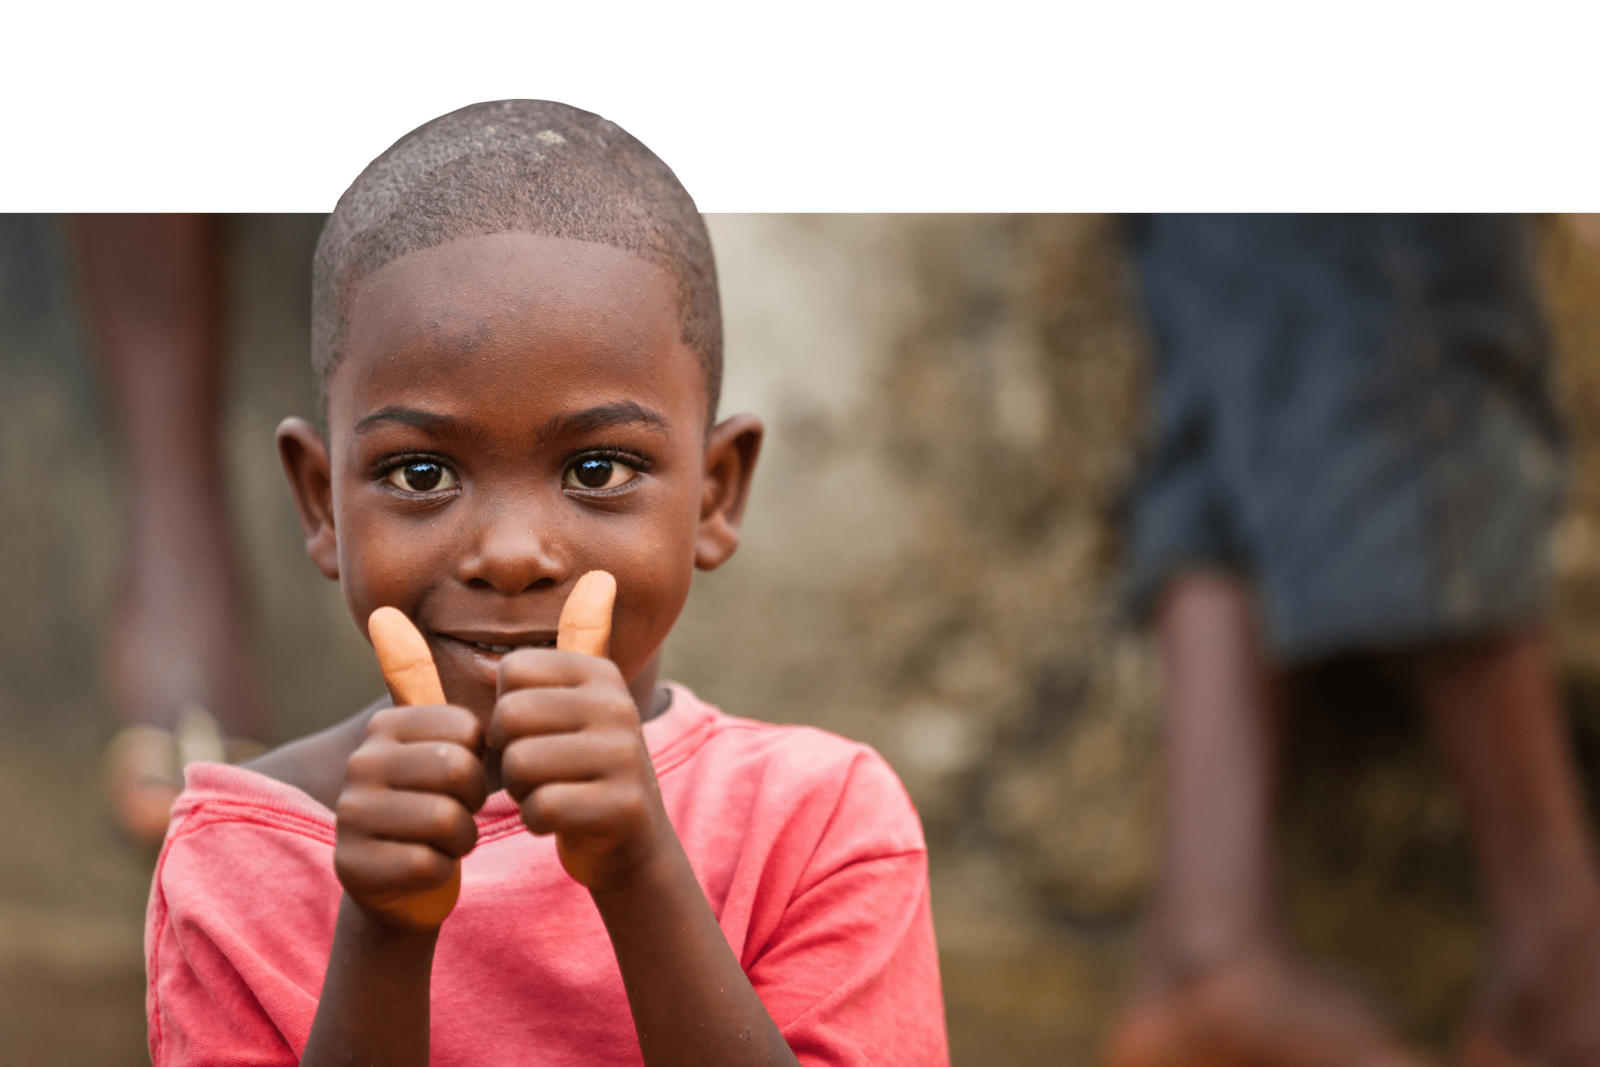 CIFF là một quỹ đầu tư vì trẻ em đầy tiềm năng. Cùng xem những hình ảnh và video về các chương trình giáo dục và cộng đồng được tổ chức bởi CIFF trên khắp thế giới. Hãy đóng góp cho sự phát triển của trẻ em và cộng đồng.